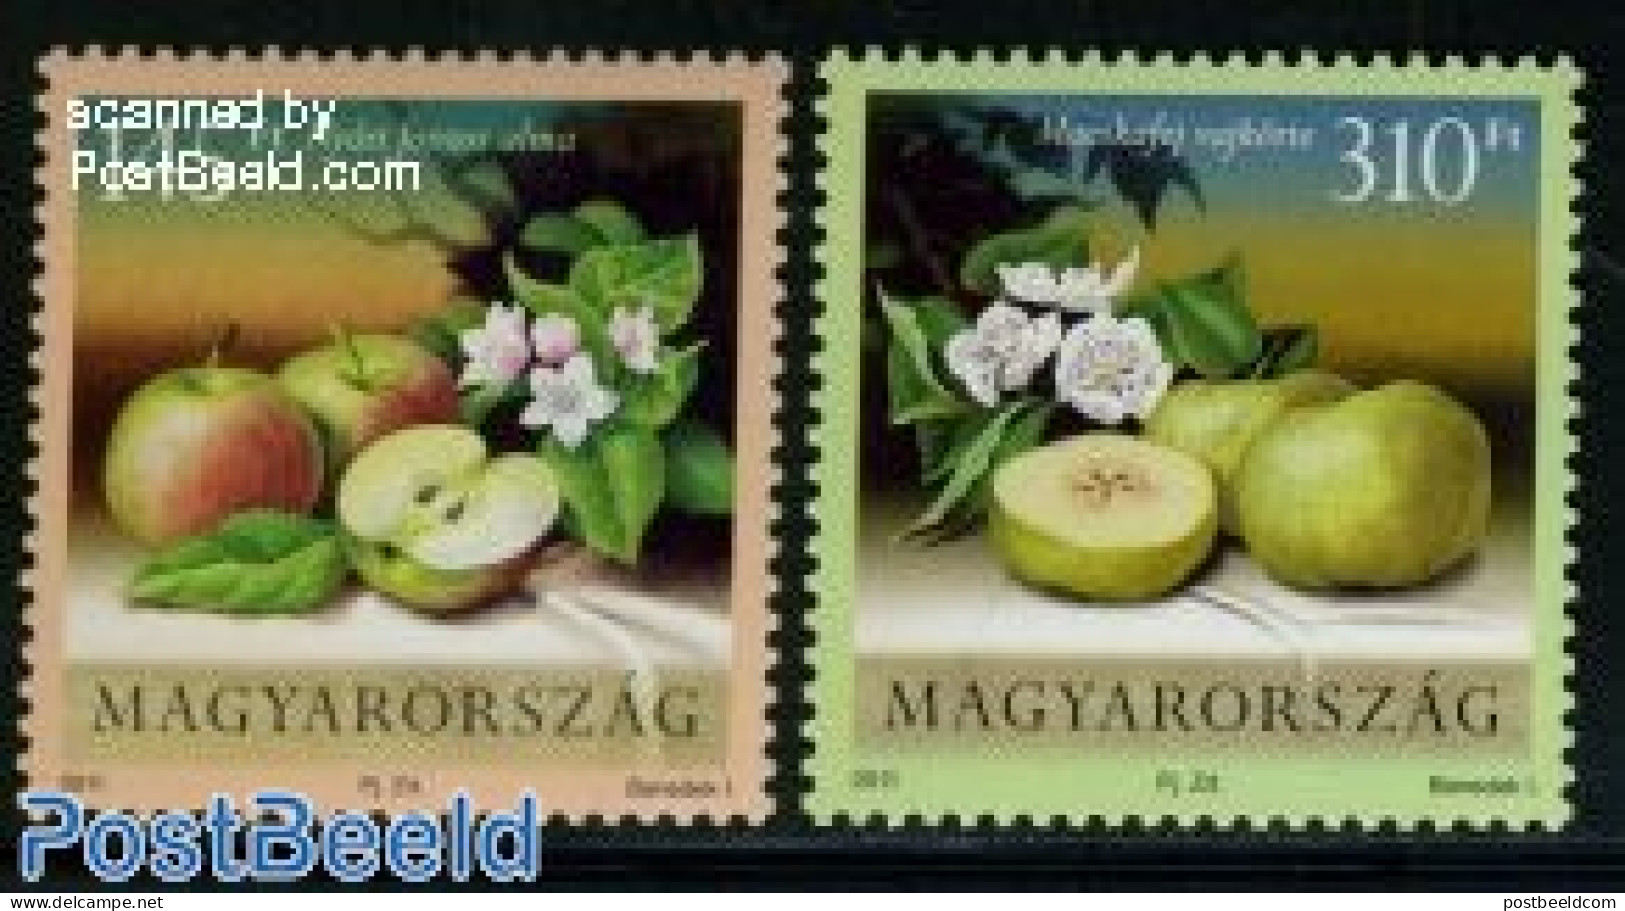 Hungary 2011 Apples 2v, Mint NH, Nature - Fruit - Ongebruikt